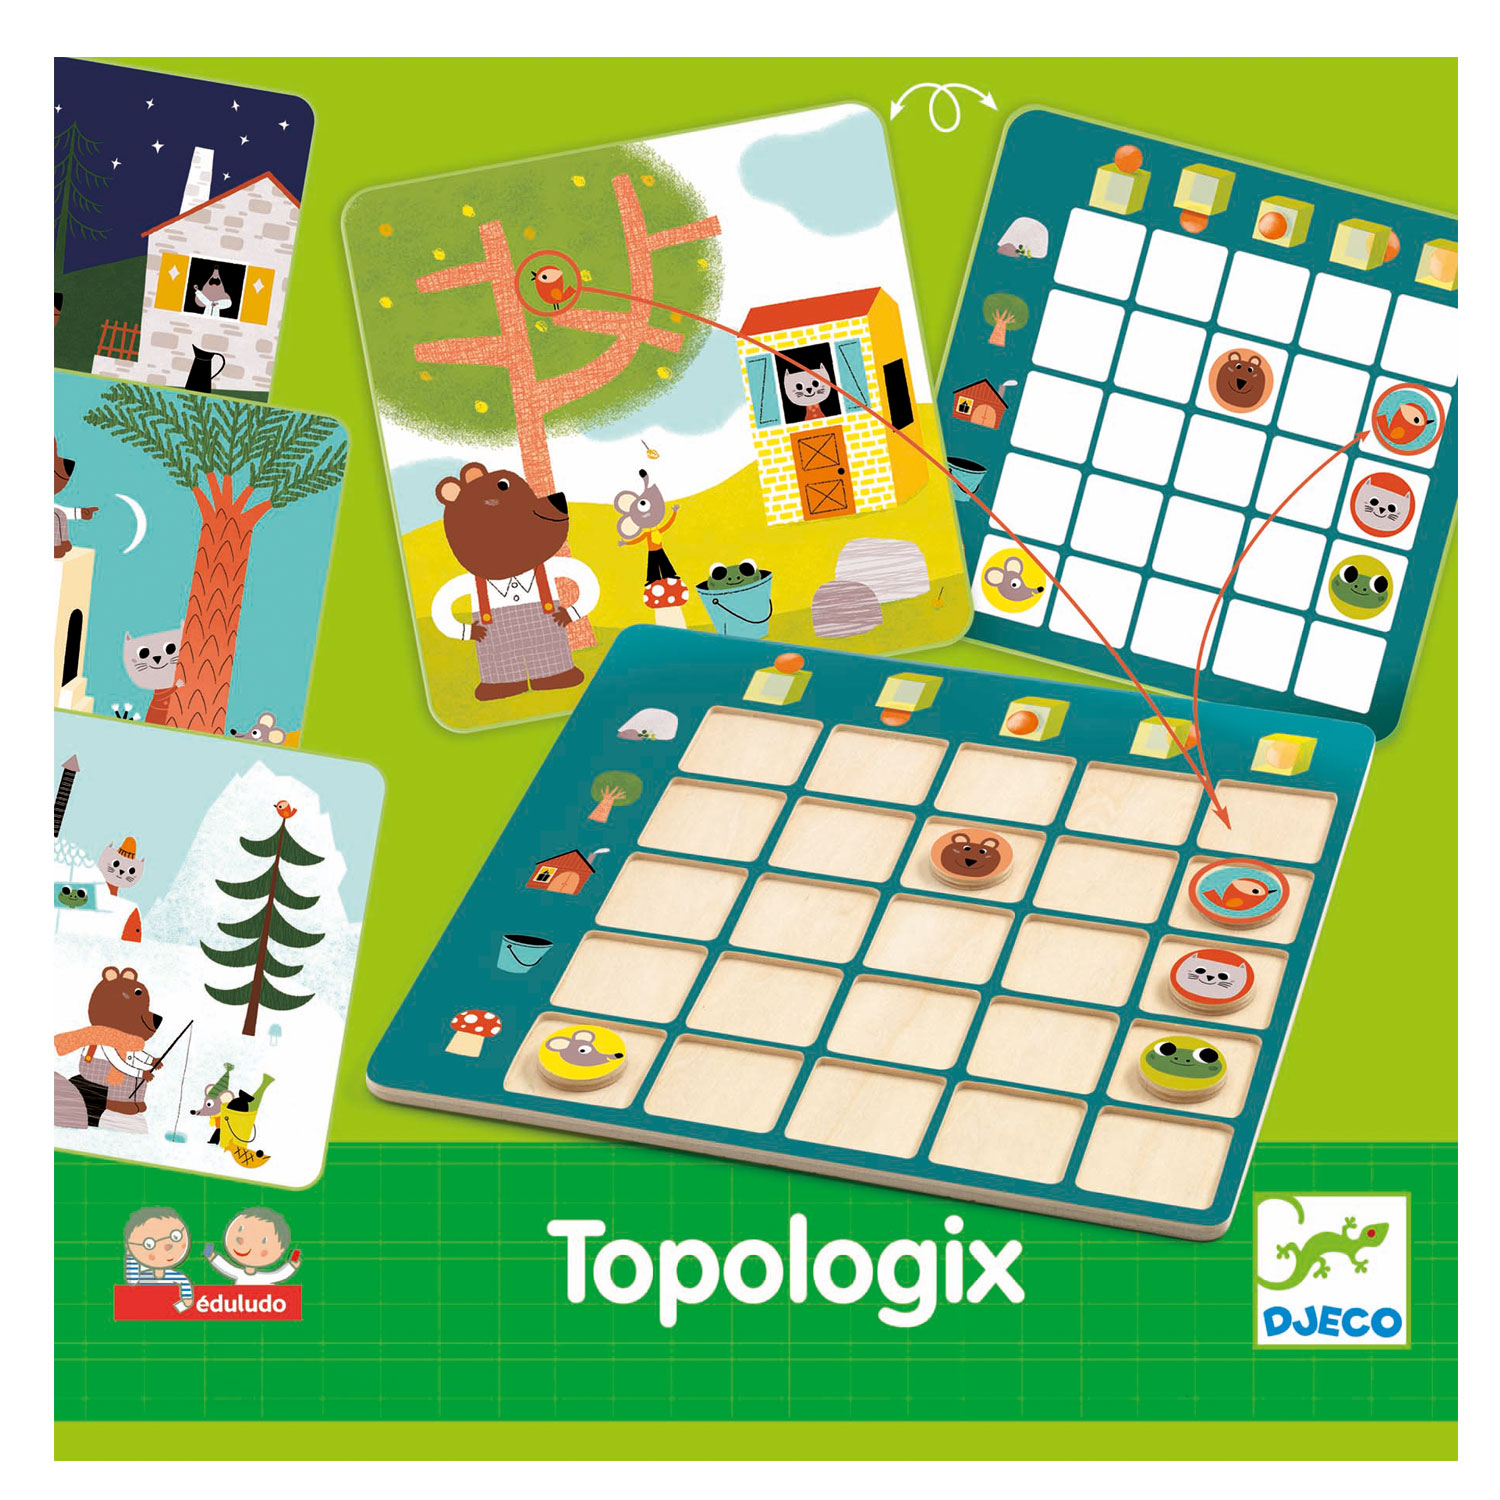 Jeu éducatif Djeco : Topologix - Jeux et jouets Djeco - Avenue des Jeux